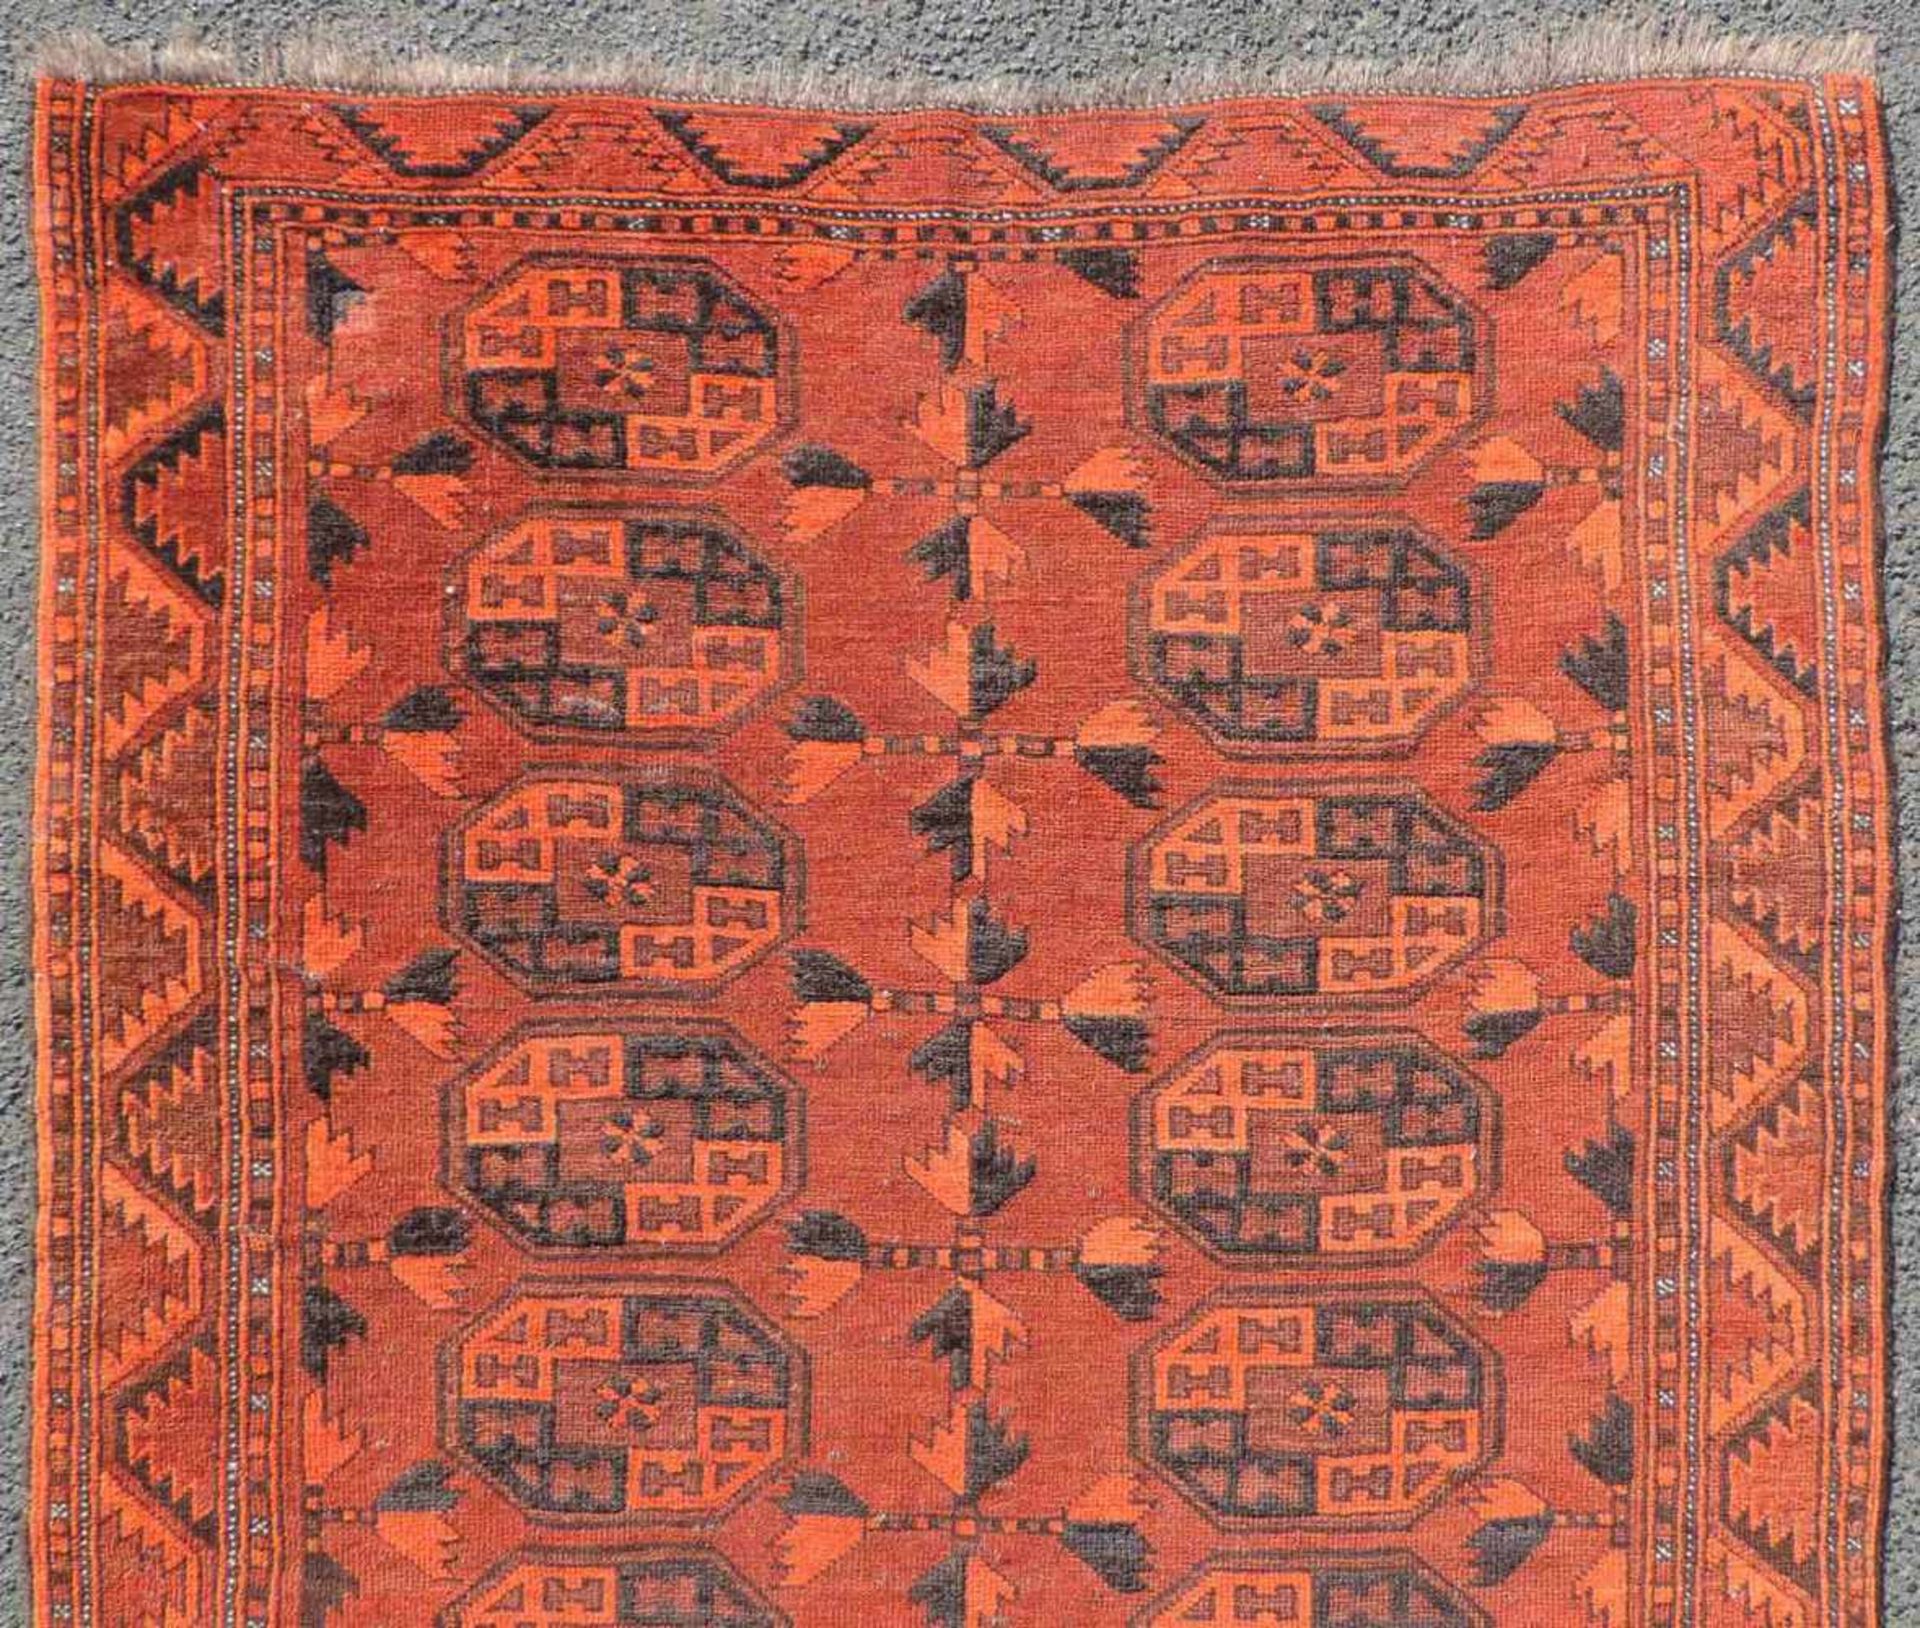 Ersari Stammesteppich. Turkmenistan. Antik, um 1900.182 cm x 98 cm. Handgeknüpft. Wolle auf Wolle. - Bild 3 aus 7